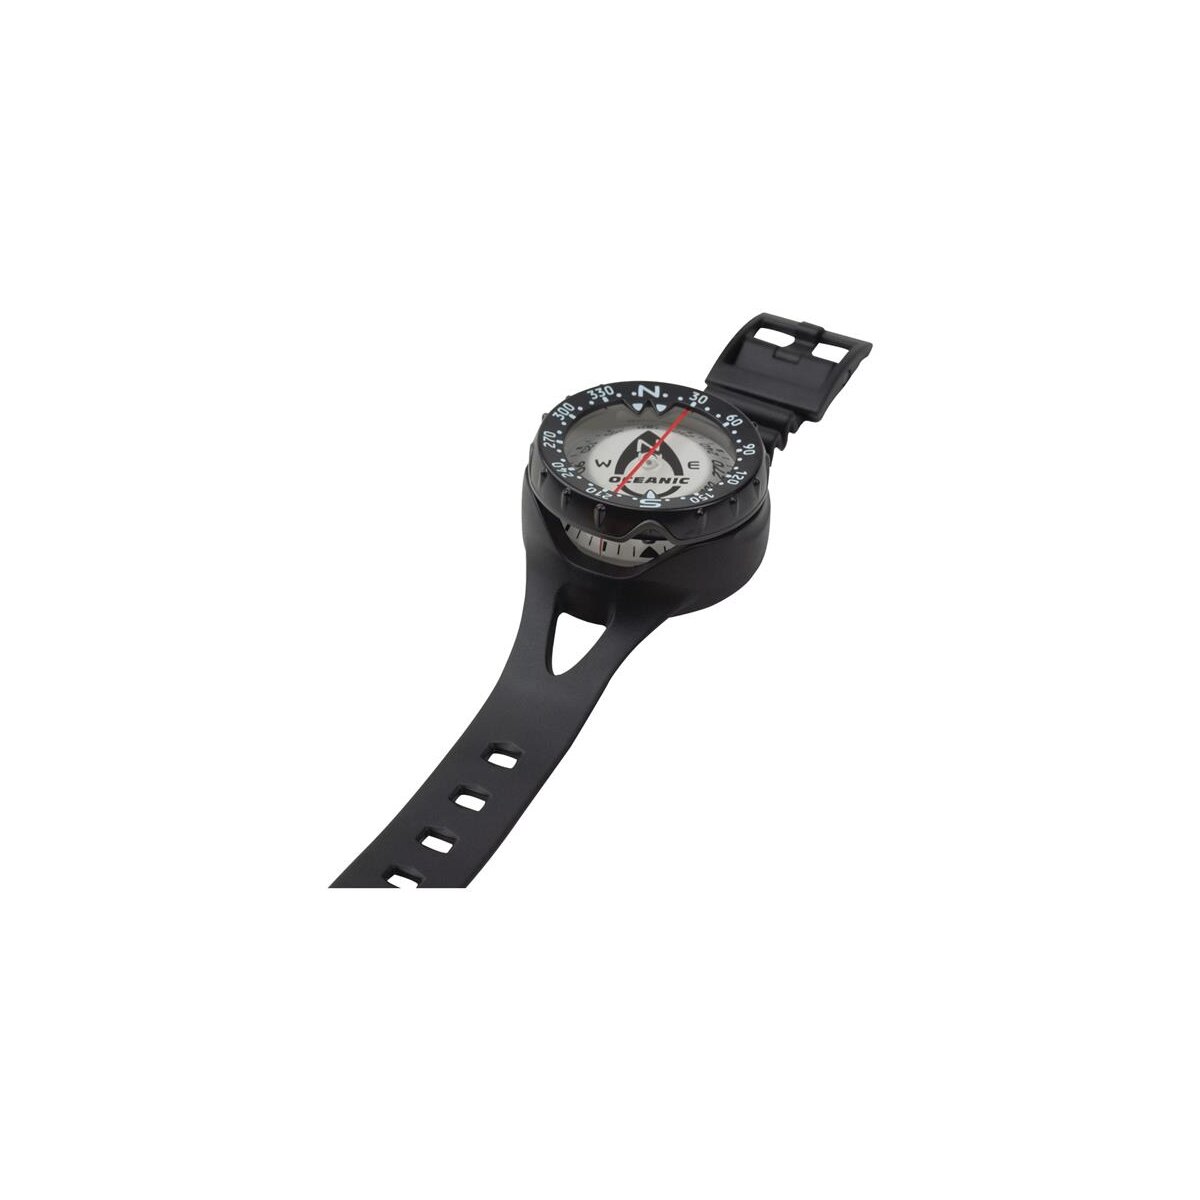 Professionelle Tauch Armband Kompass Wasserdicht Navigator Leuchtzifferblat Y6S2 